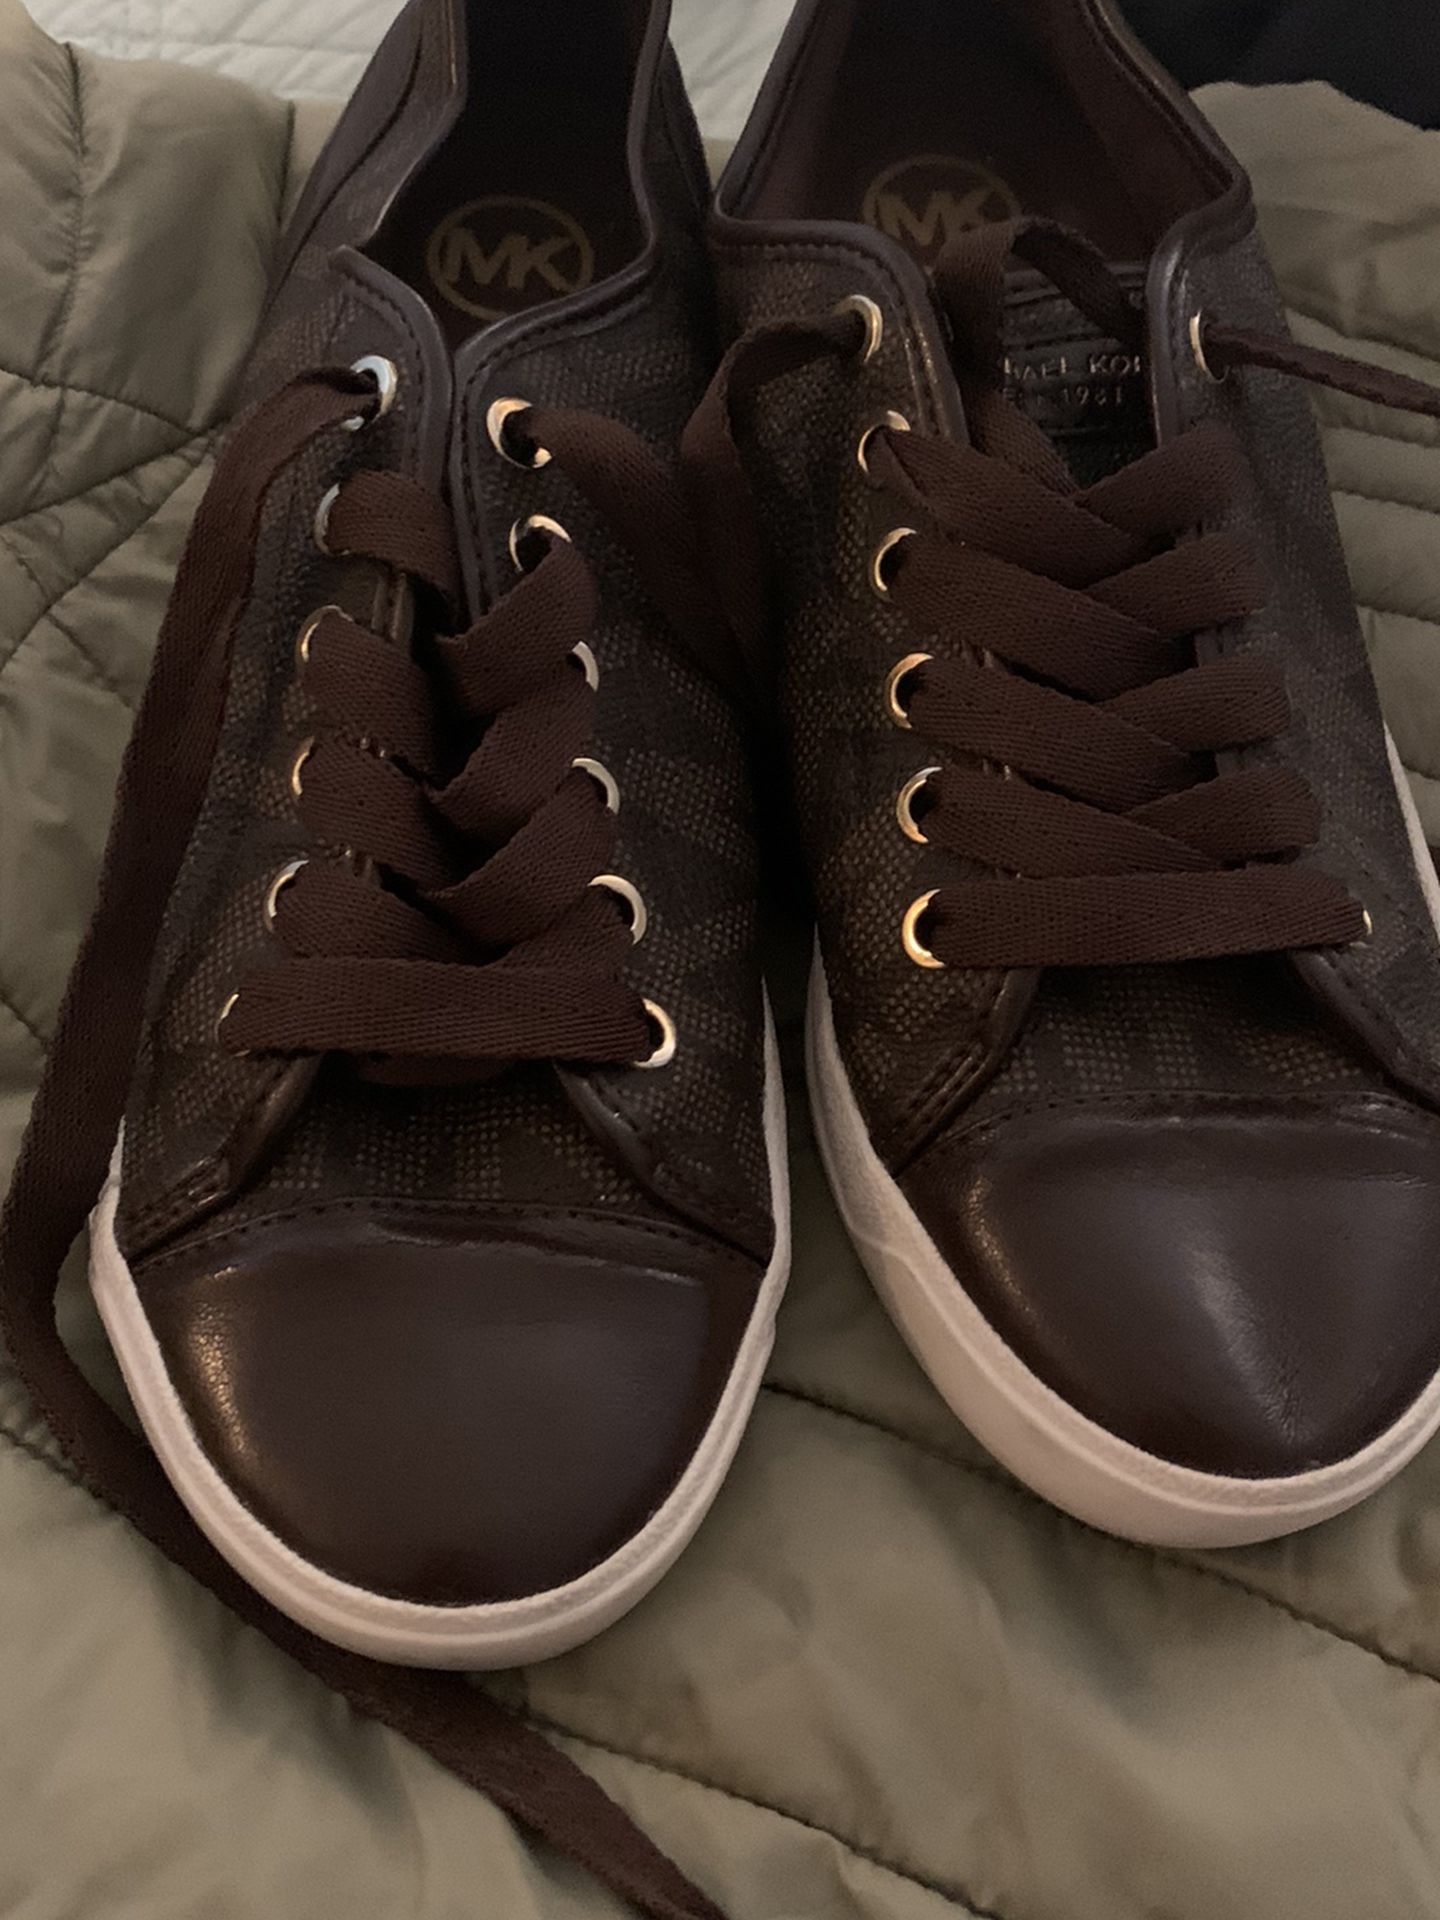 Michael Kors Shoes Size 7